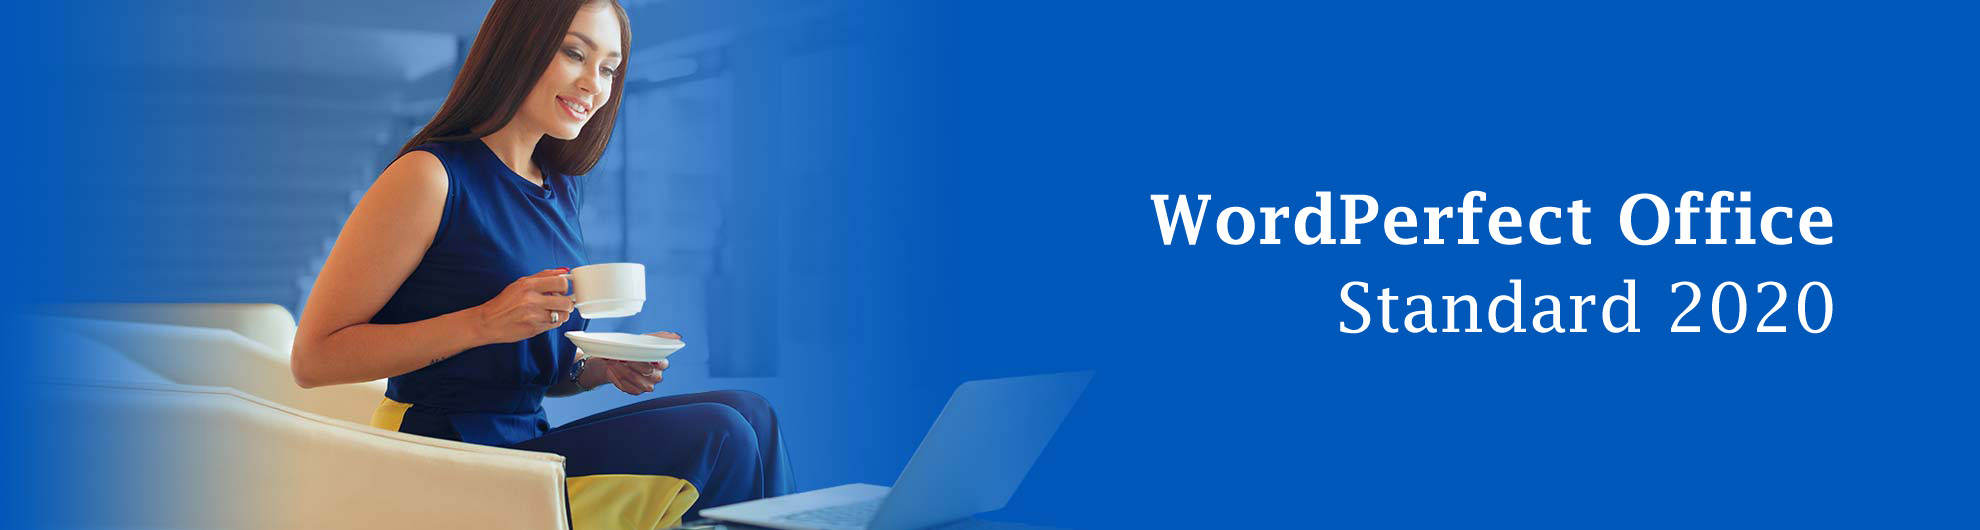 WordPerfect Office Standard 2020